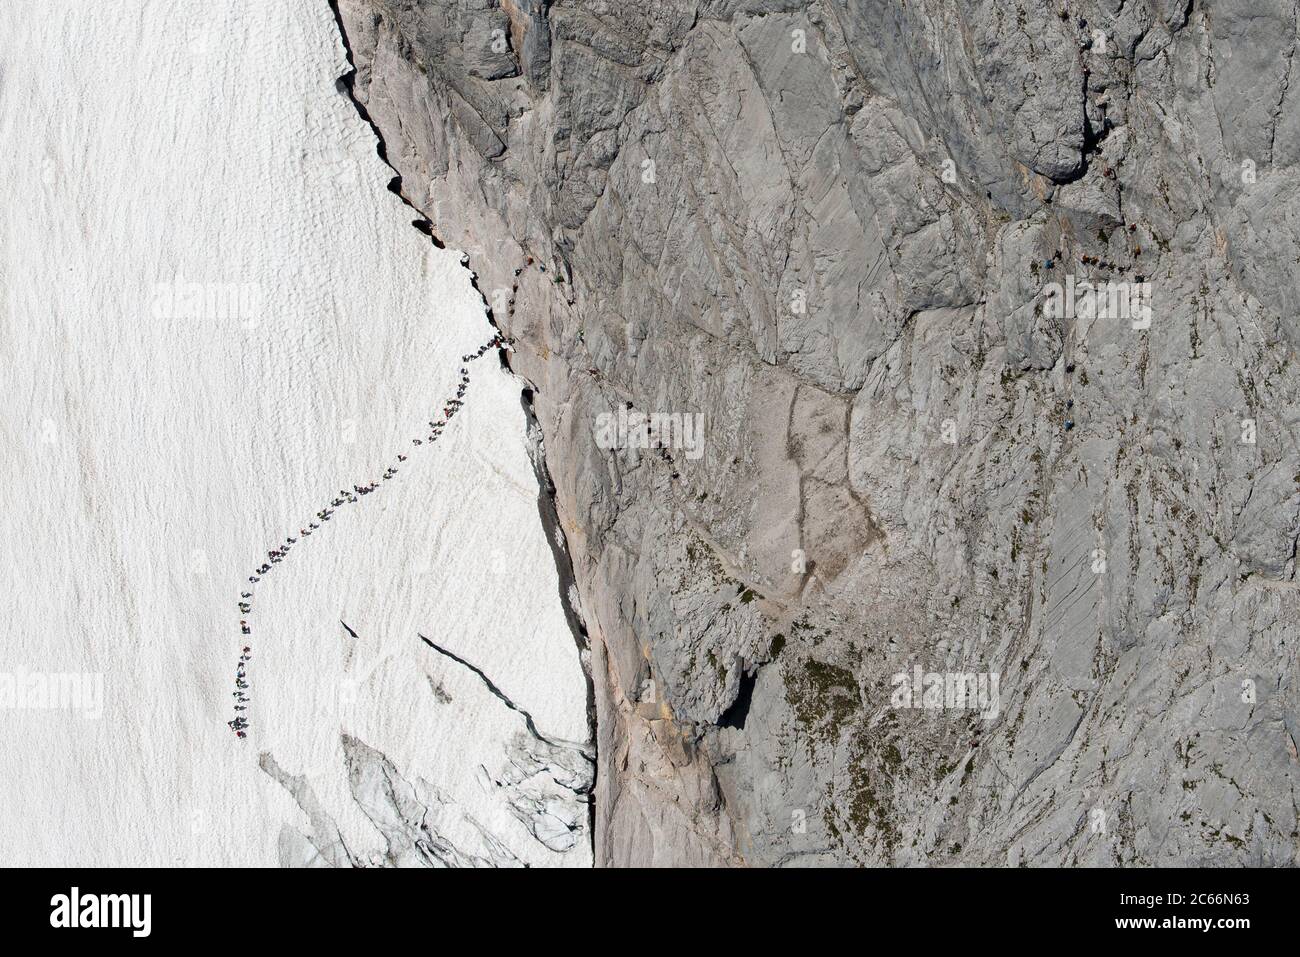 Alpinistes faisant la queue sur le glacier Höllentalferner, photographie aérienne, chaîne de montagnes de Wetterstein, Bavière, Allemagne Banque D'Images